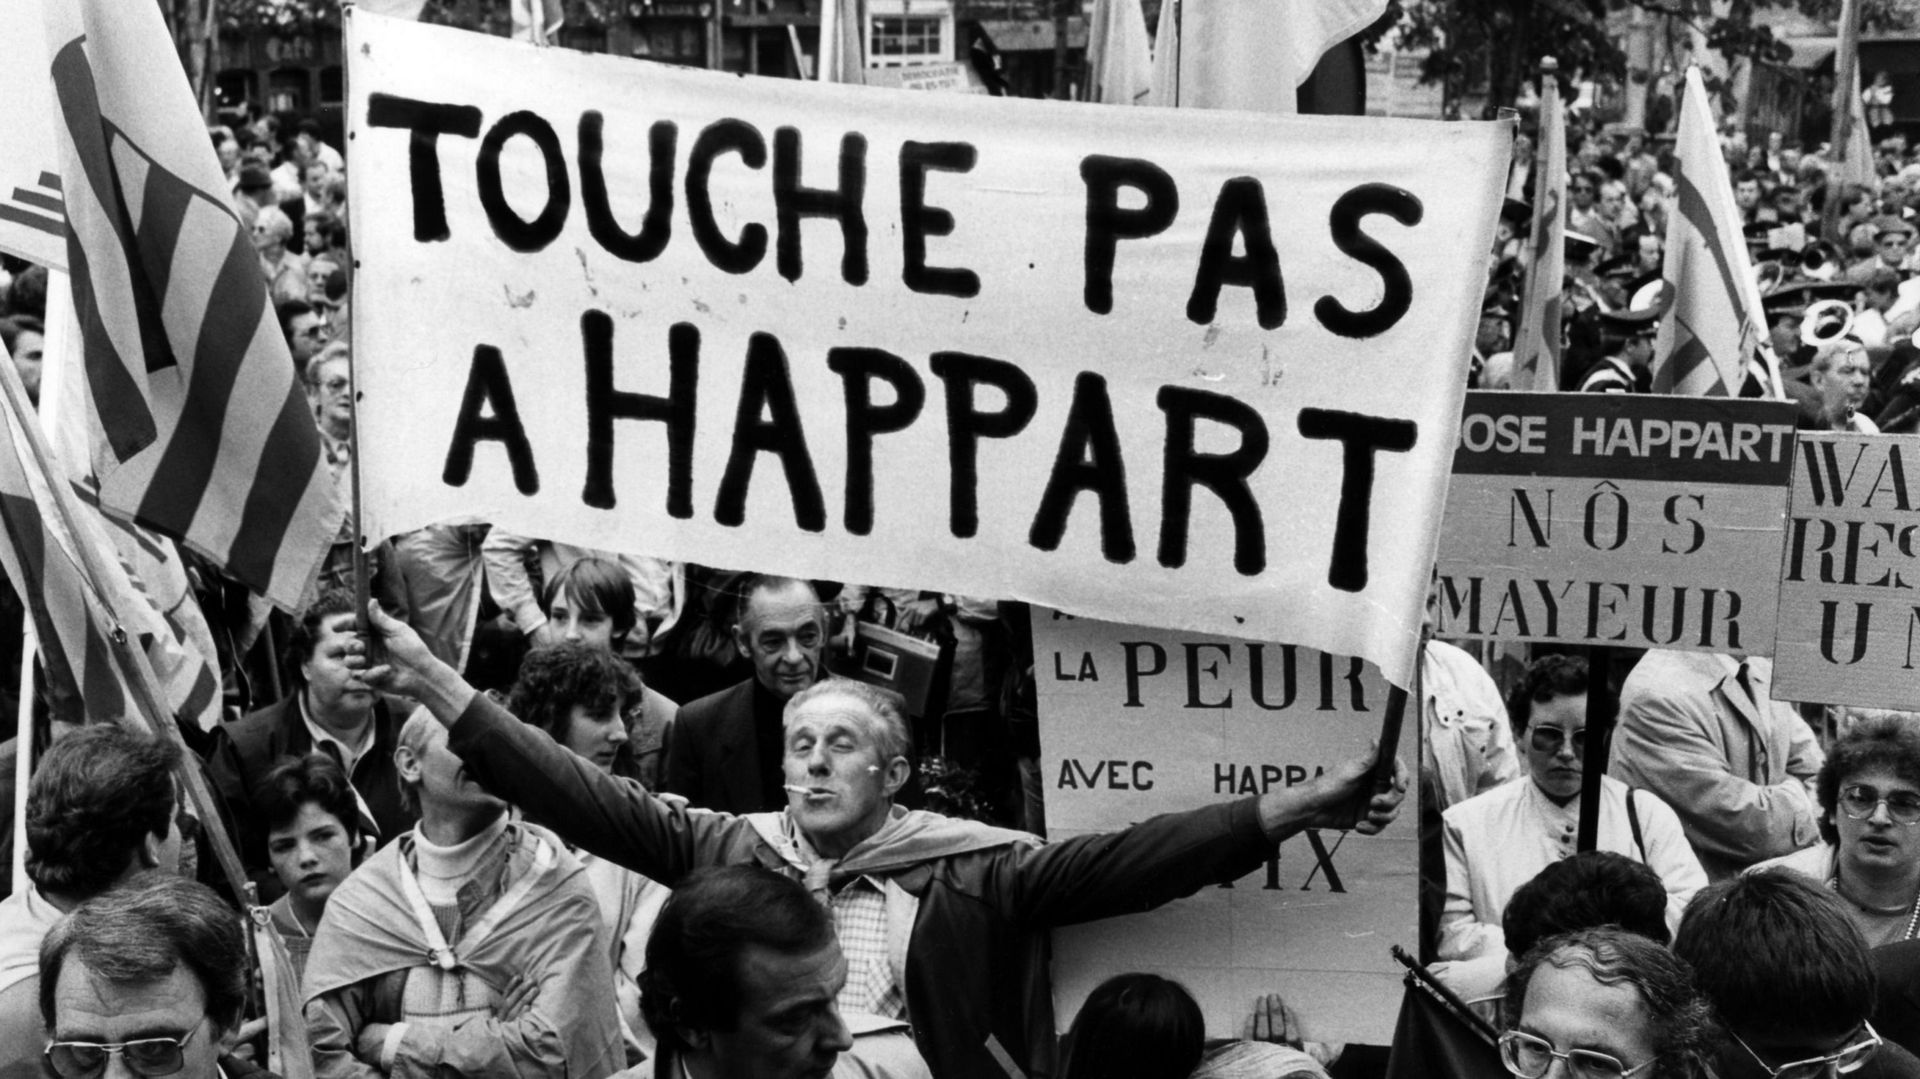 Manifestants fouronnais soutenant José Happart en 1986